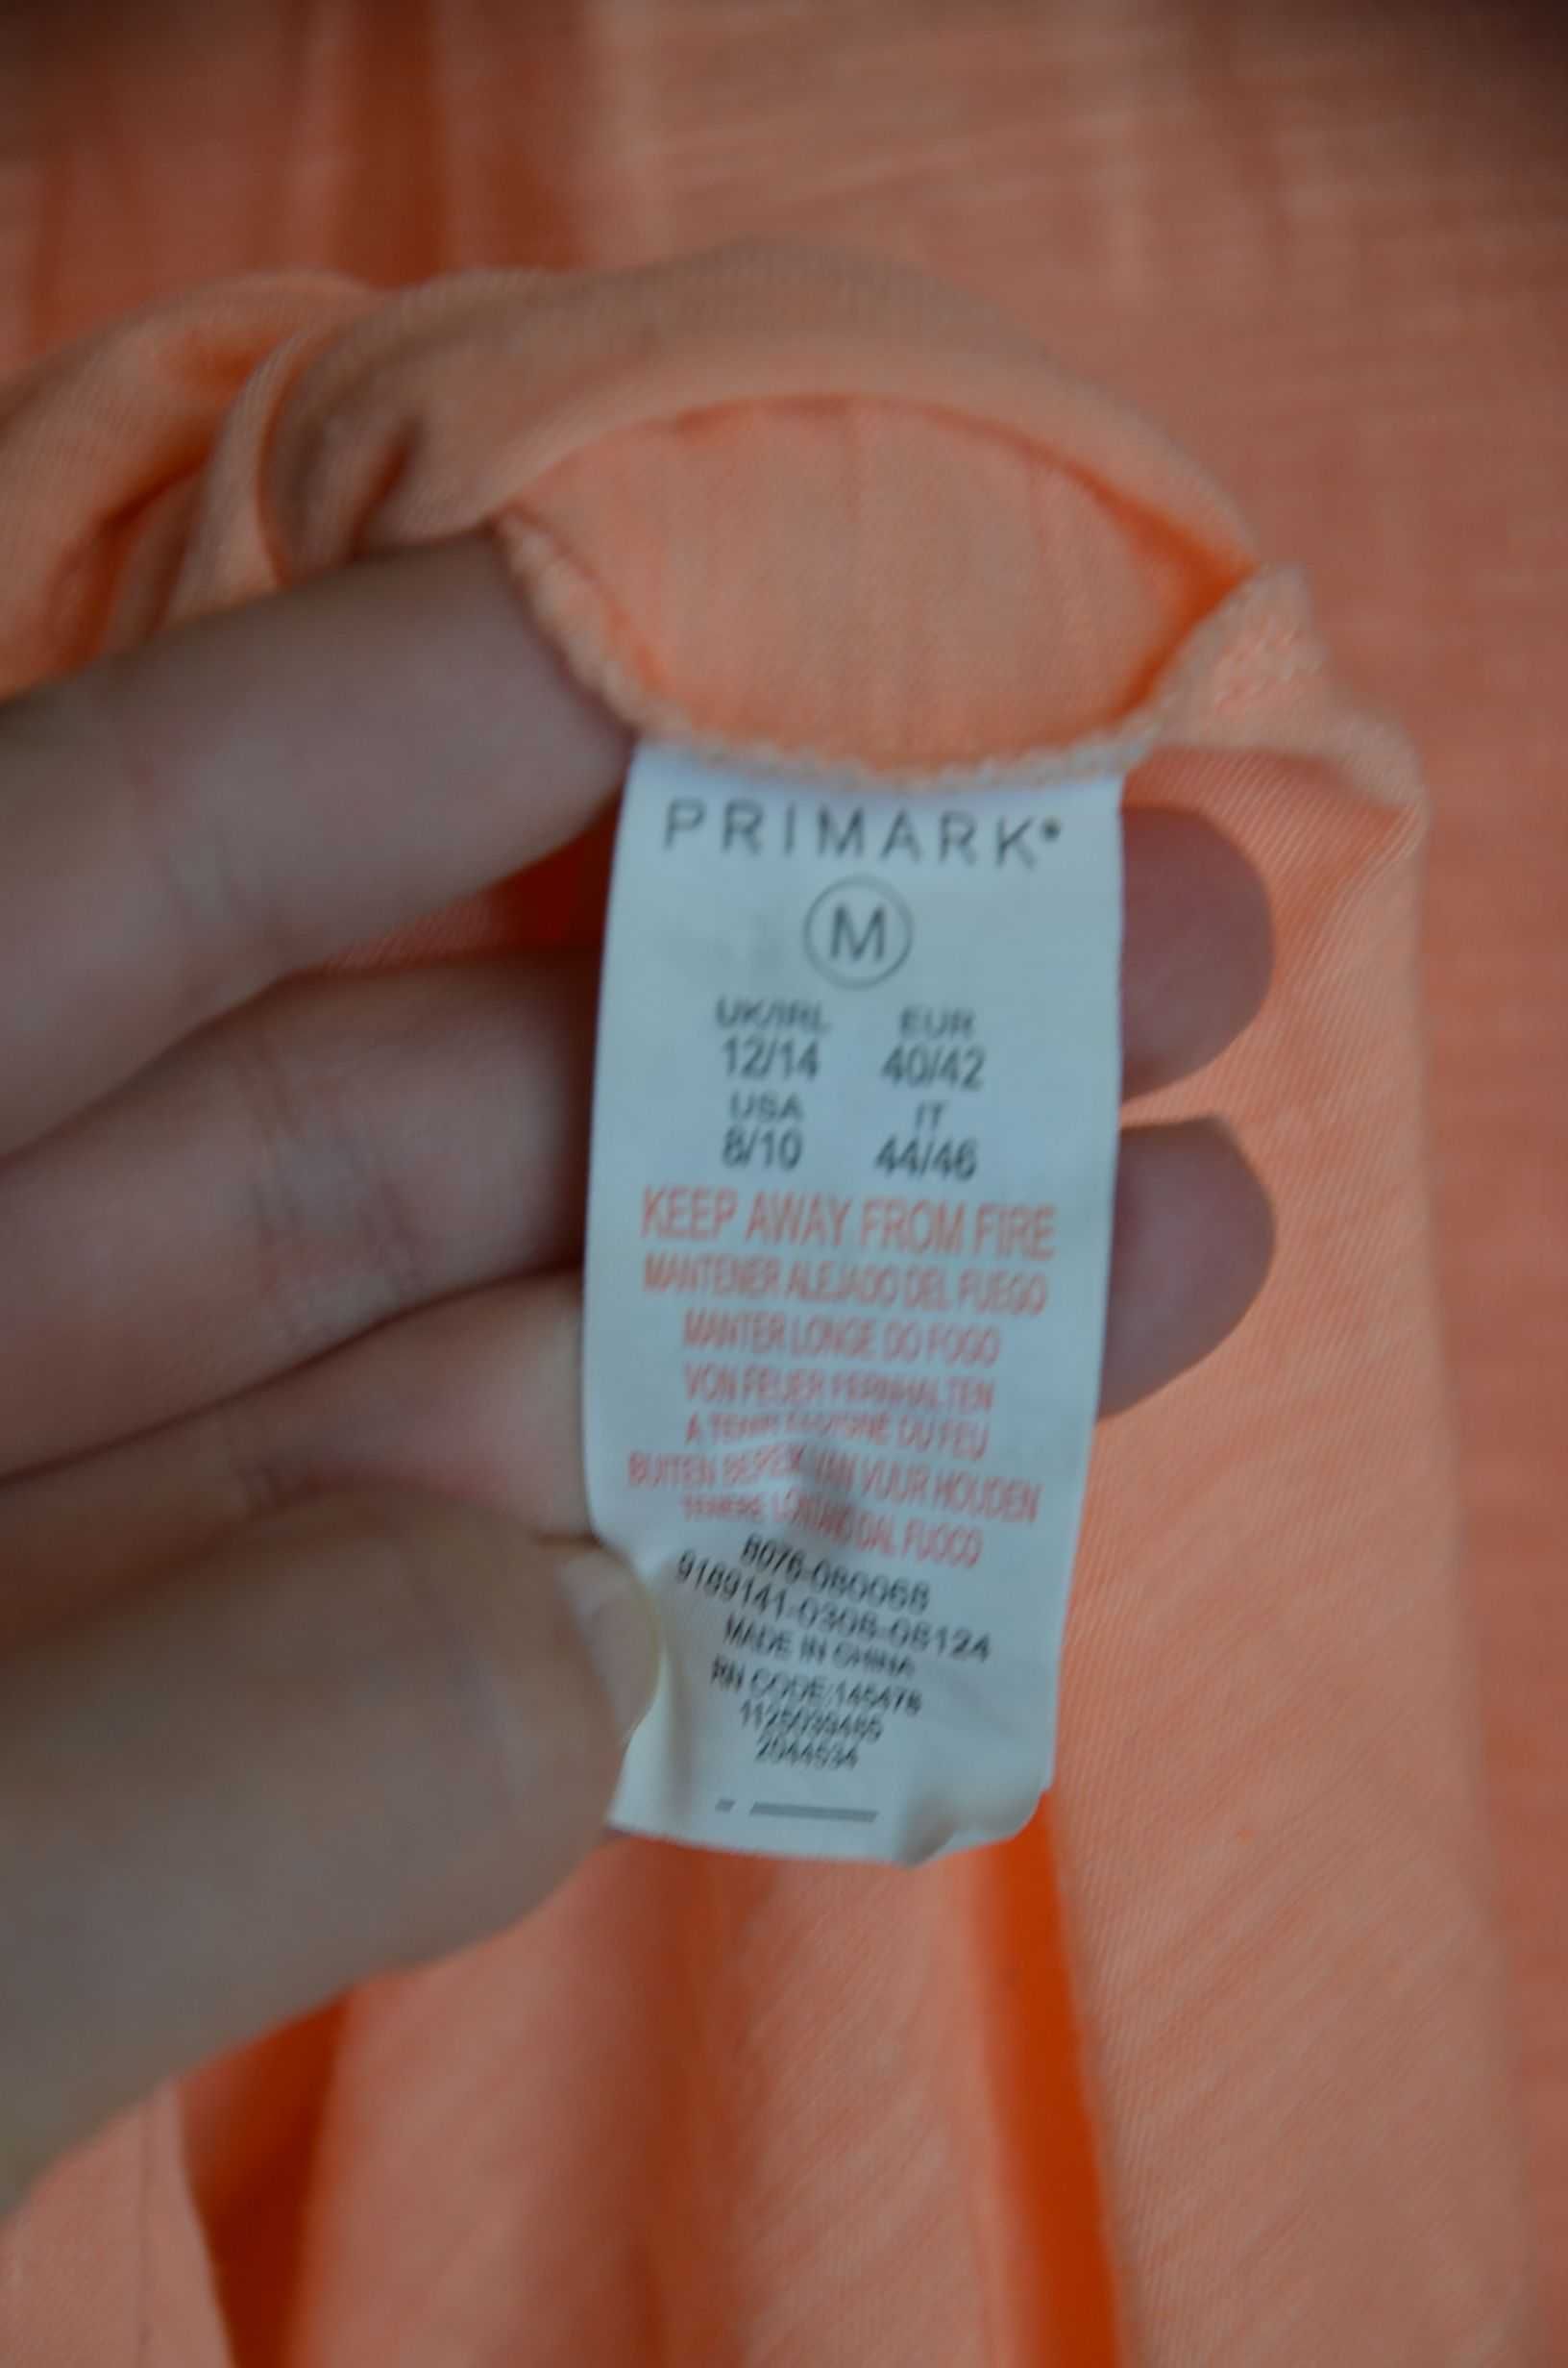 Bluzka bez rękawów pomarańczowa neonowa cienka letnia M L XL 40 42